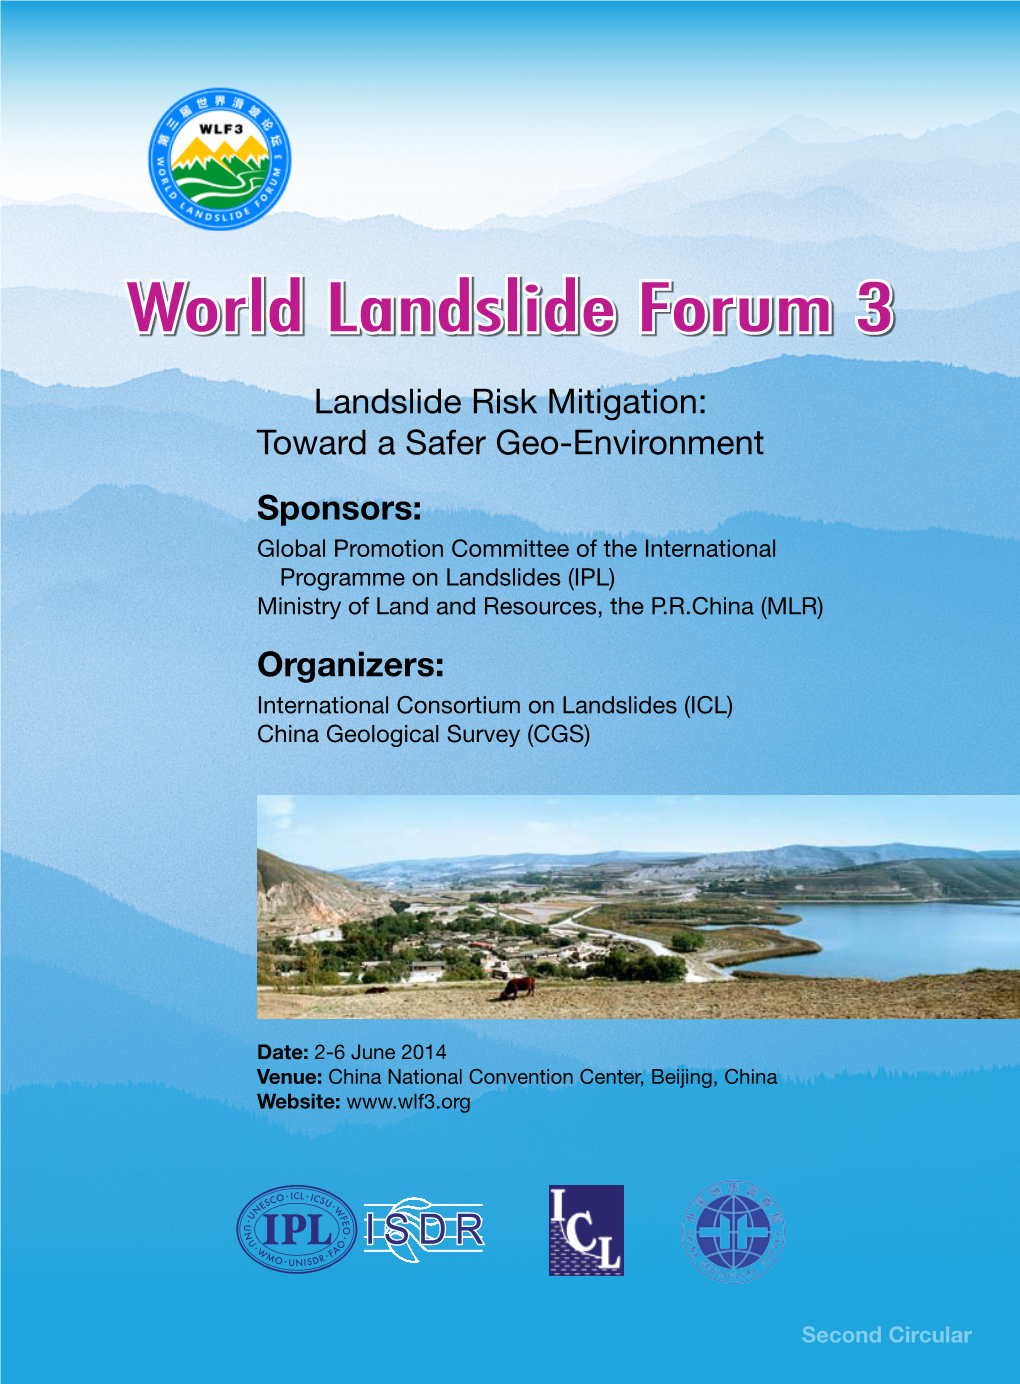 World Landslide Forum 3